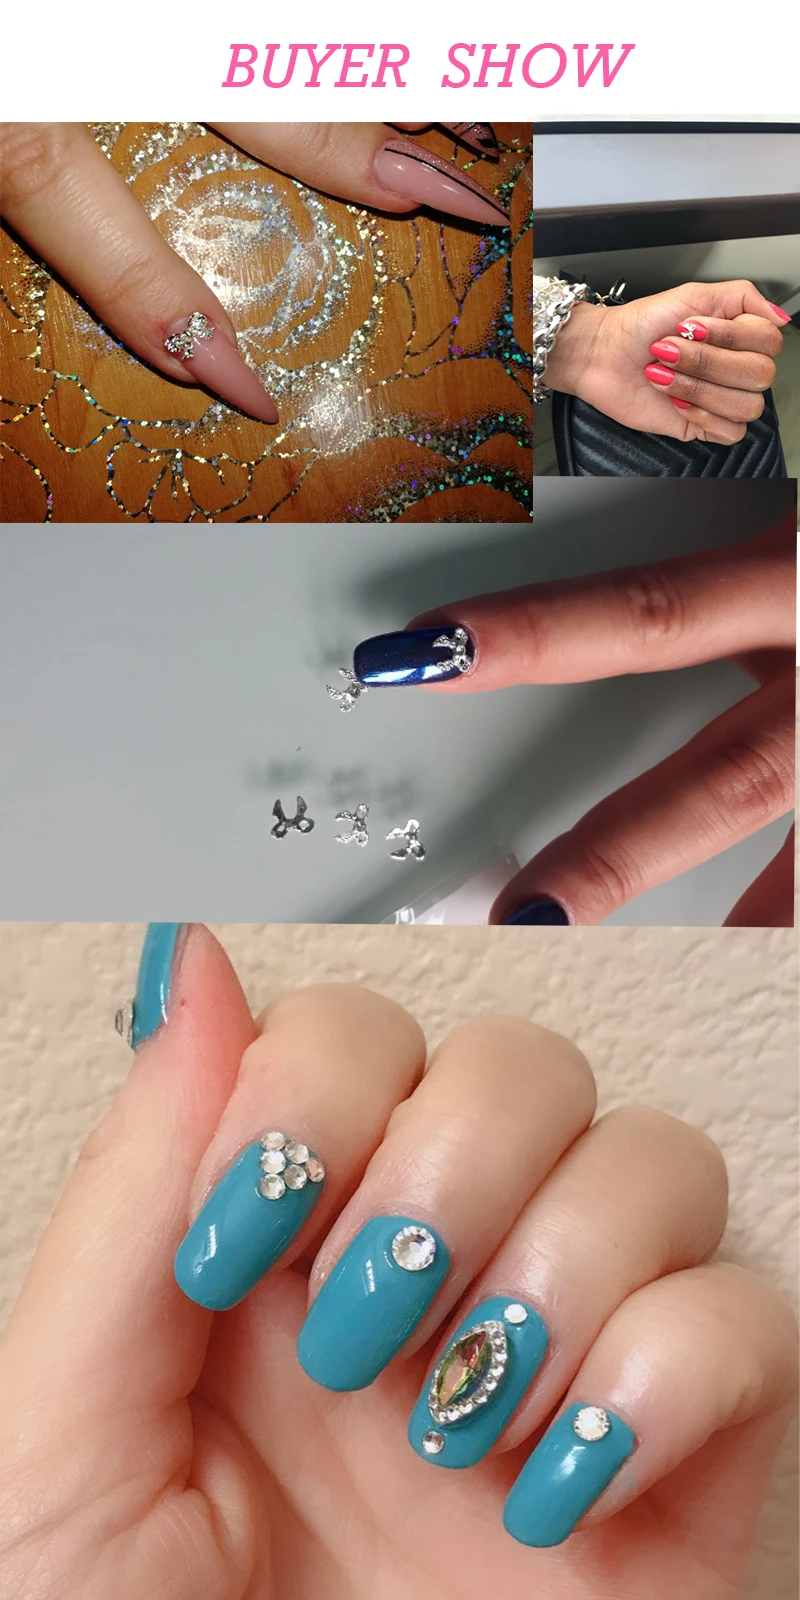 LEAMX 10 шт горный хрусталь эмаль украшение для ногтей в виде бабочки ювелирные изделия стеклянные украшения для ногтей 3D DIY маникюр Кристалл талисманы для ногтей L504